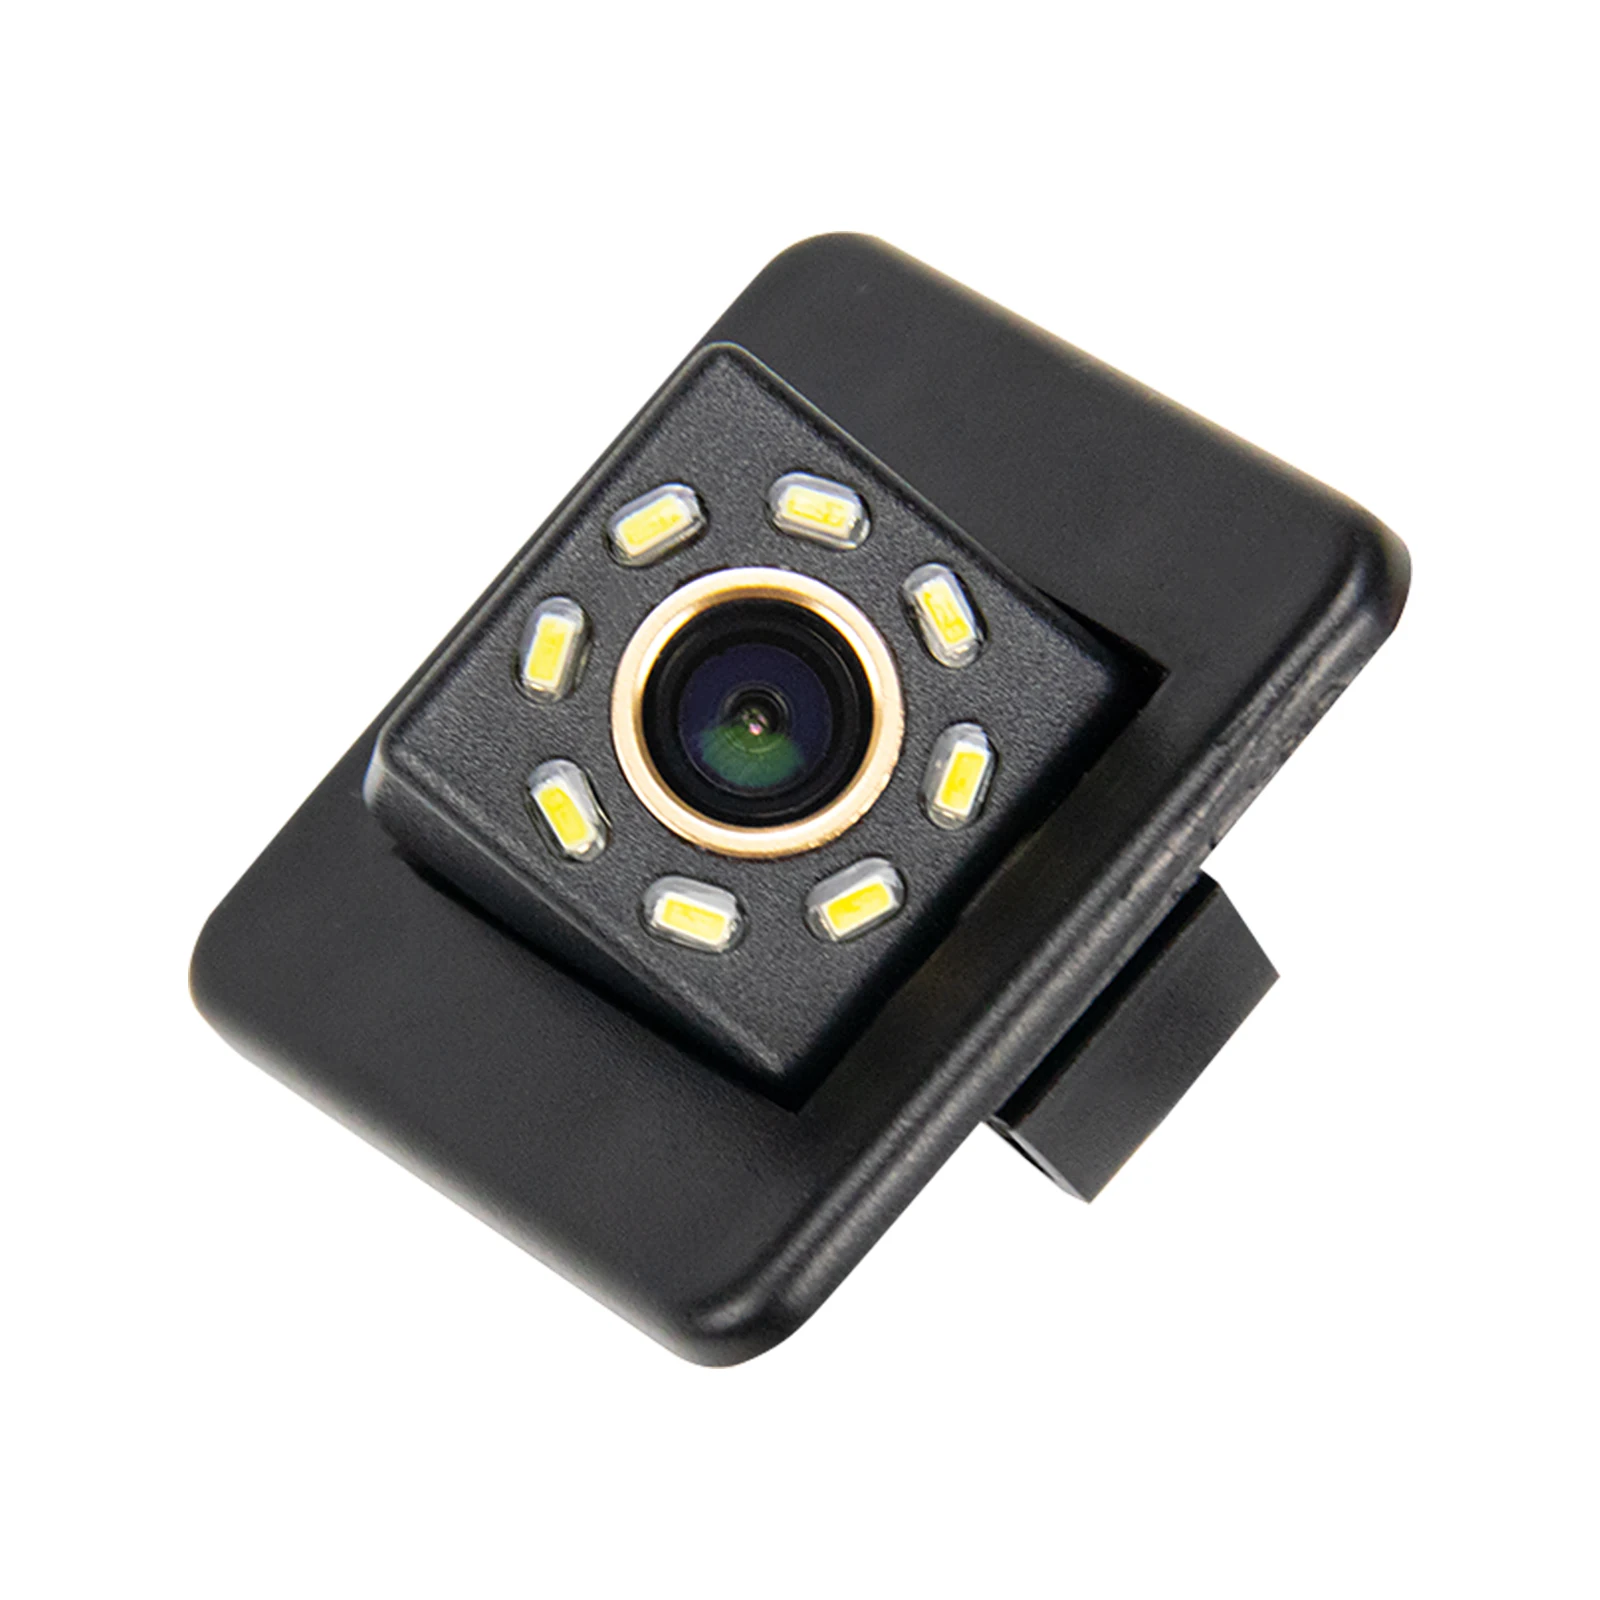 Камера заднего вида HD 720p со светодиодной подсветкой для Kia K3 K3S Cerato Forte 2013-2015 Камера заднего вида заднего вида Водонепроницаемая камера